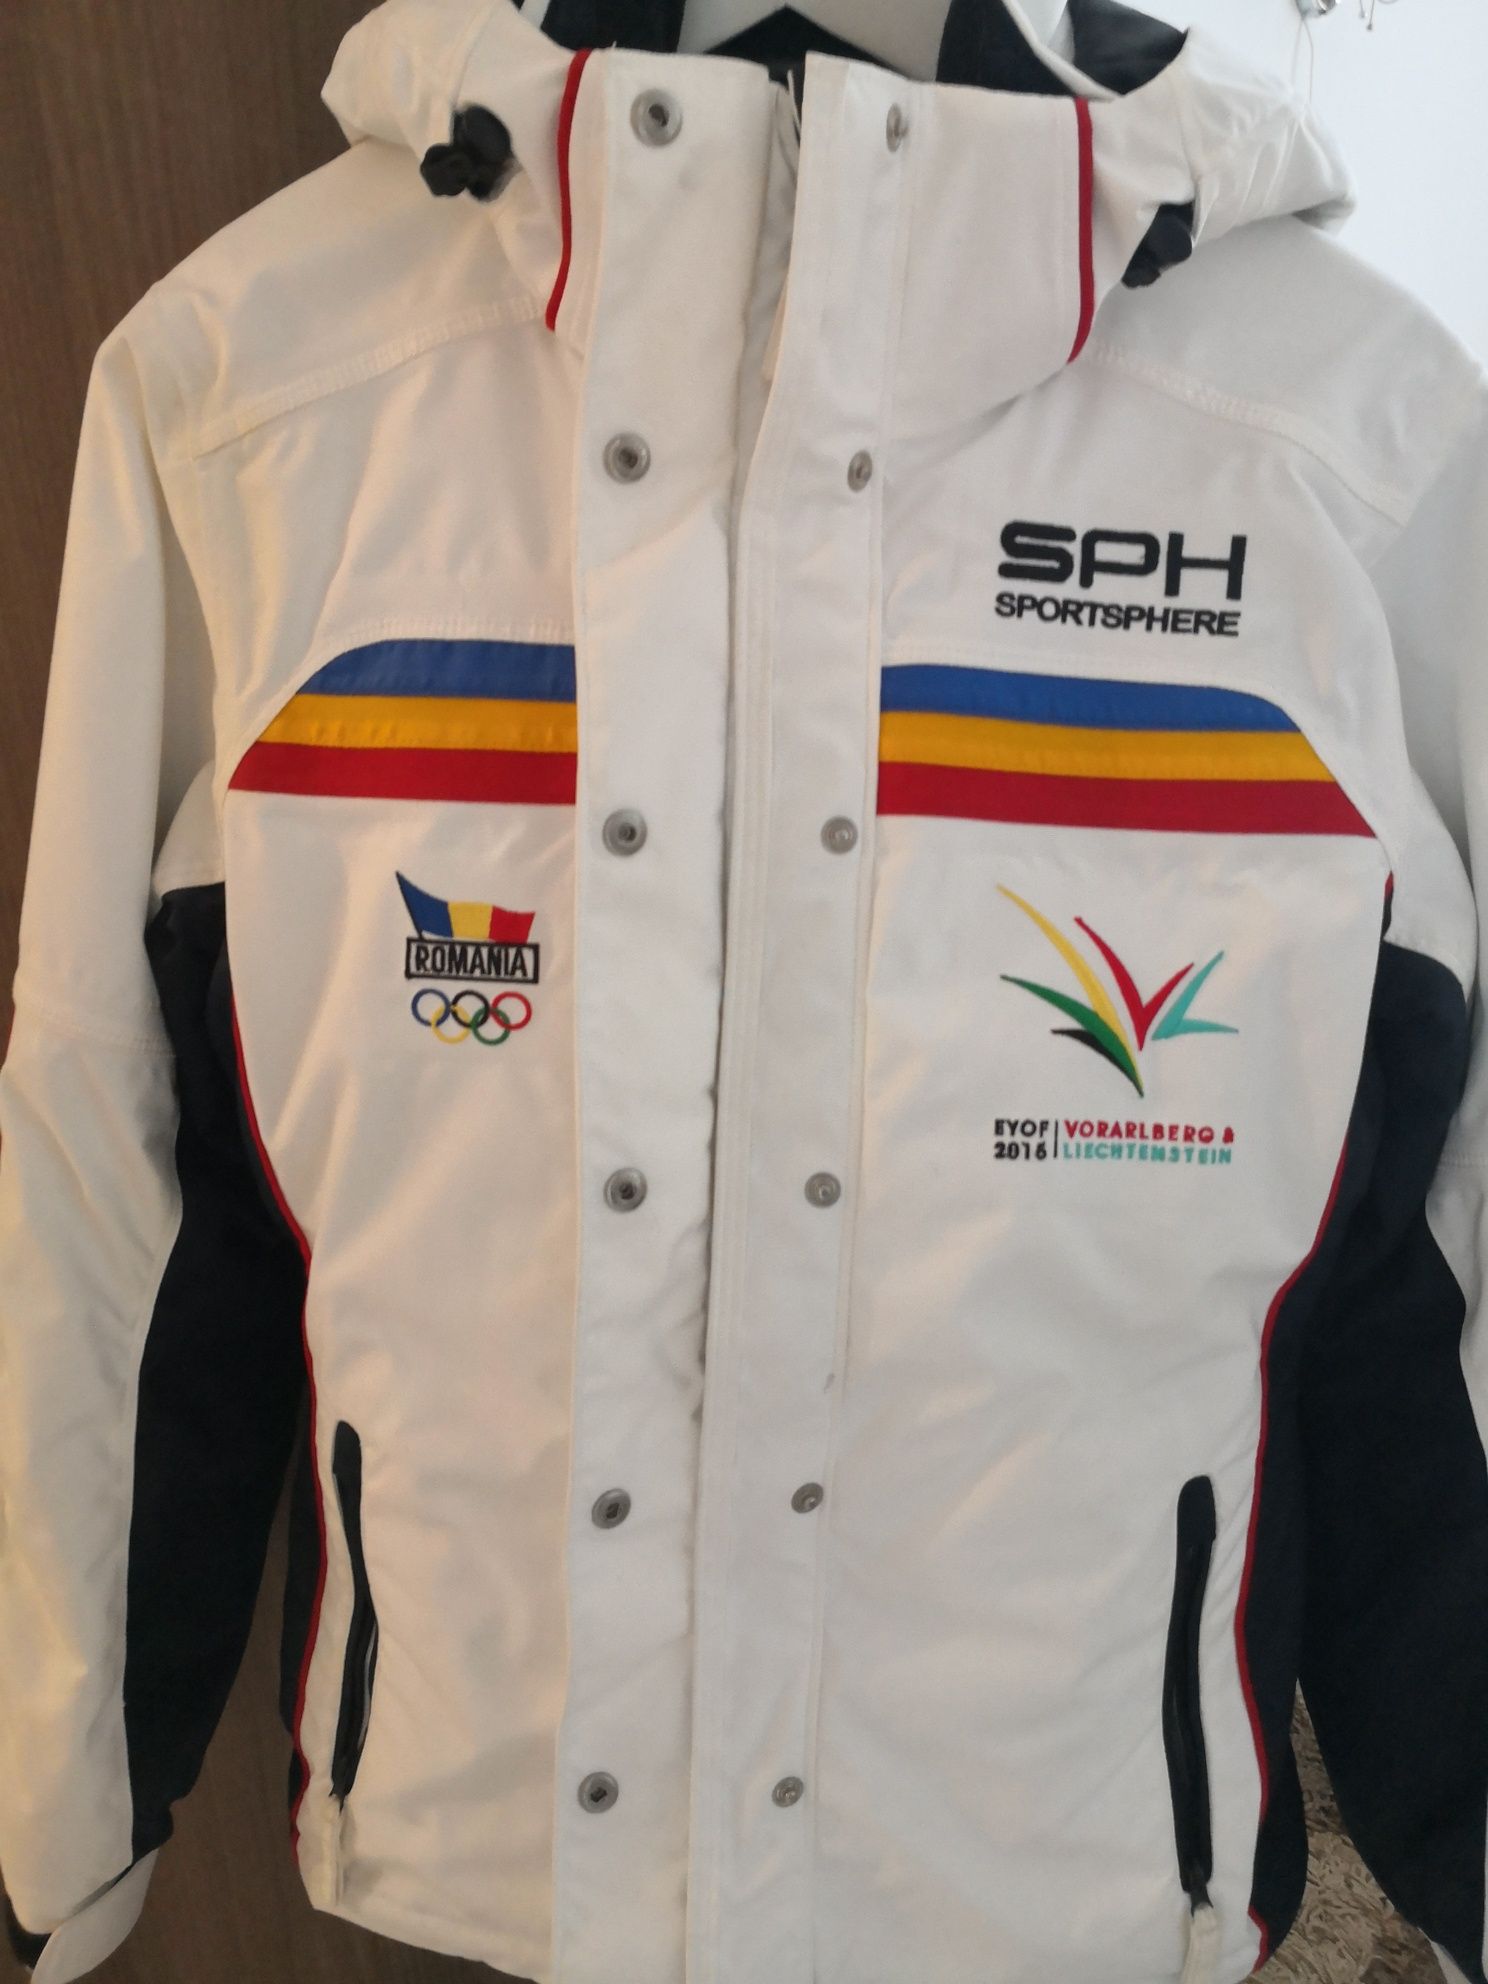 Costum ski SPH nationala României